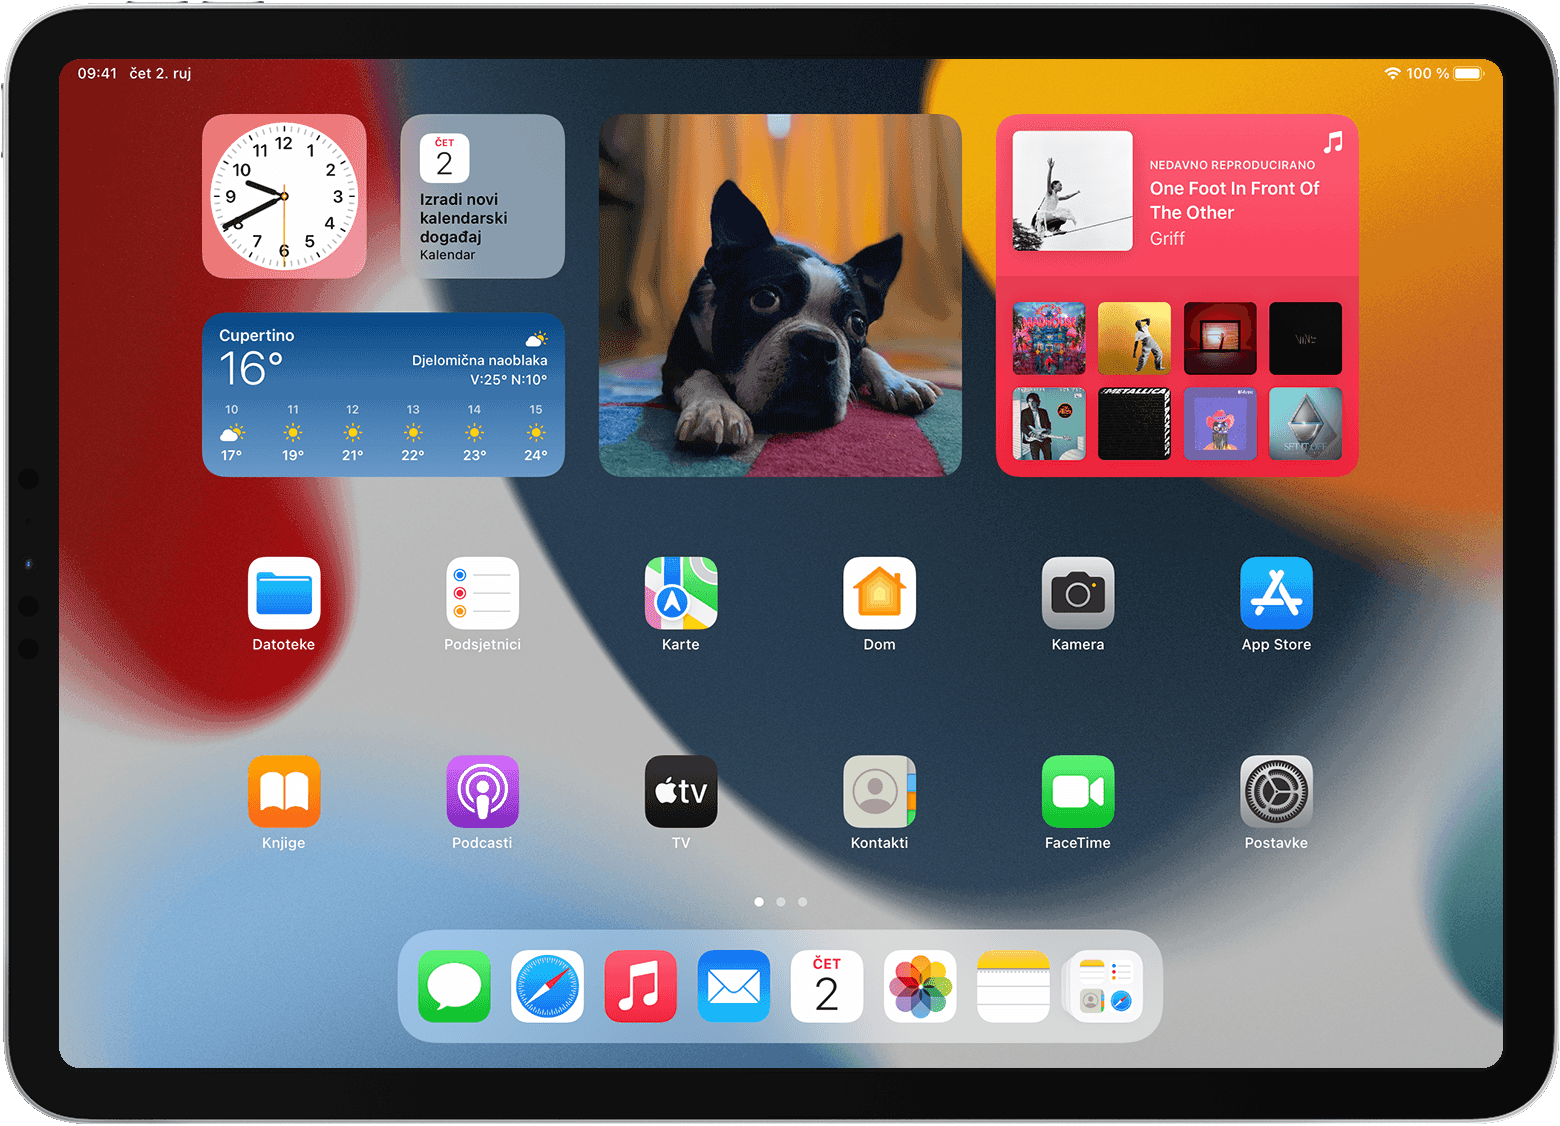 Početni zaslon iPad uređaja koji prikazuje widgete i aplikacije